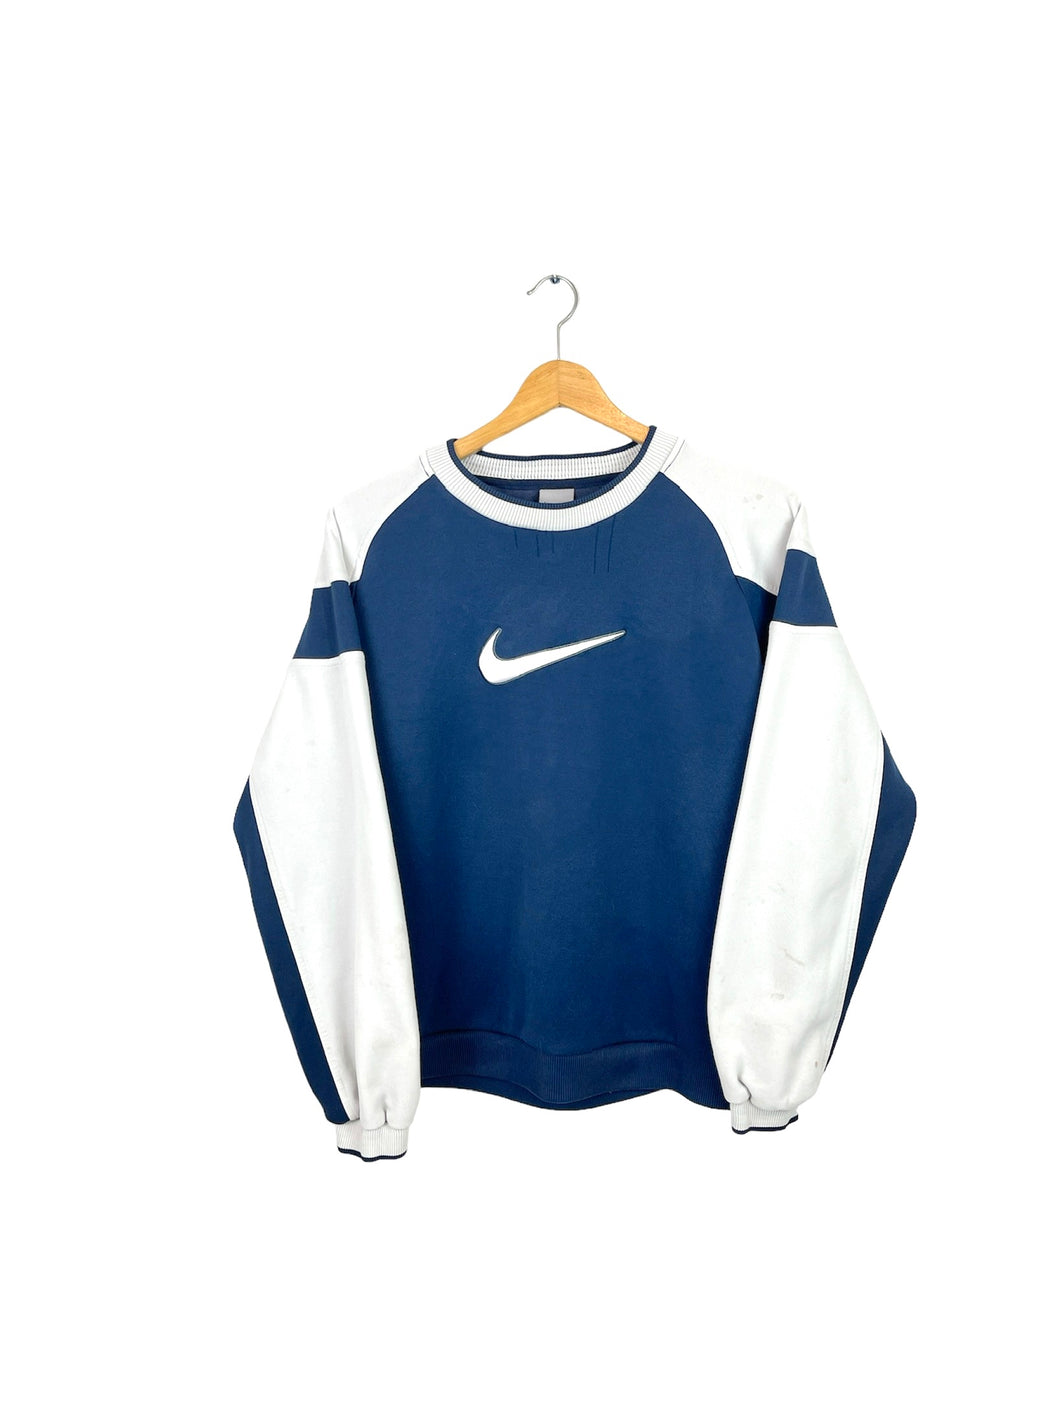 Nike Sweatshirt - XSmall